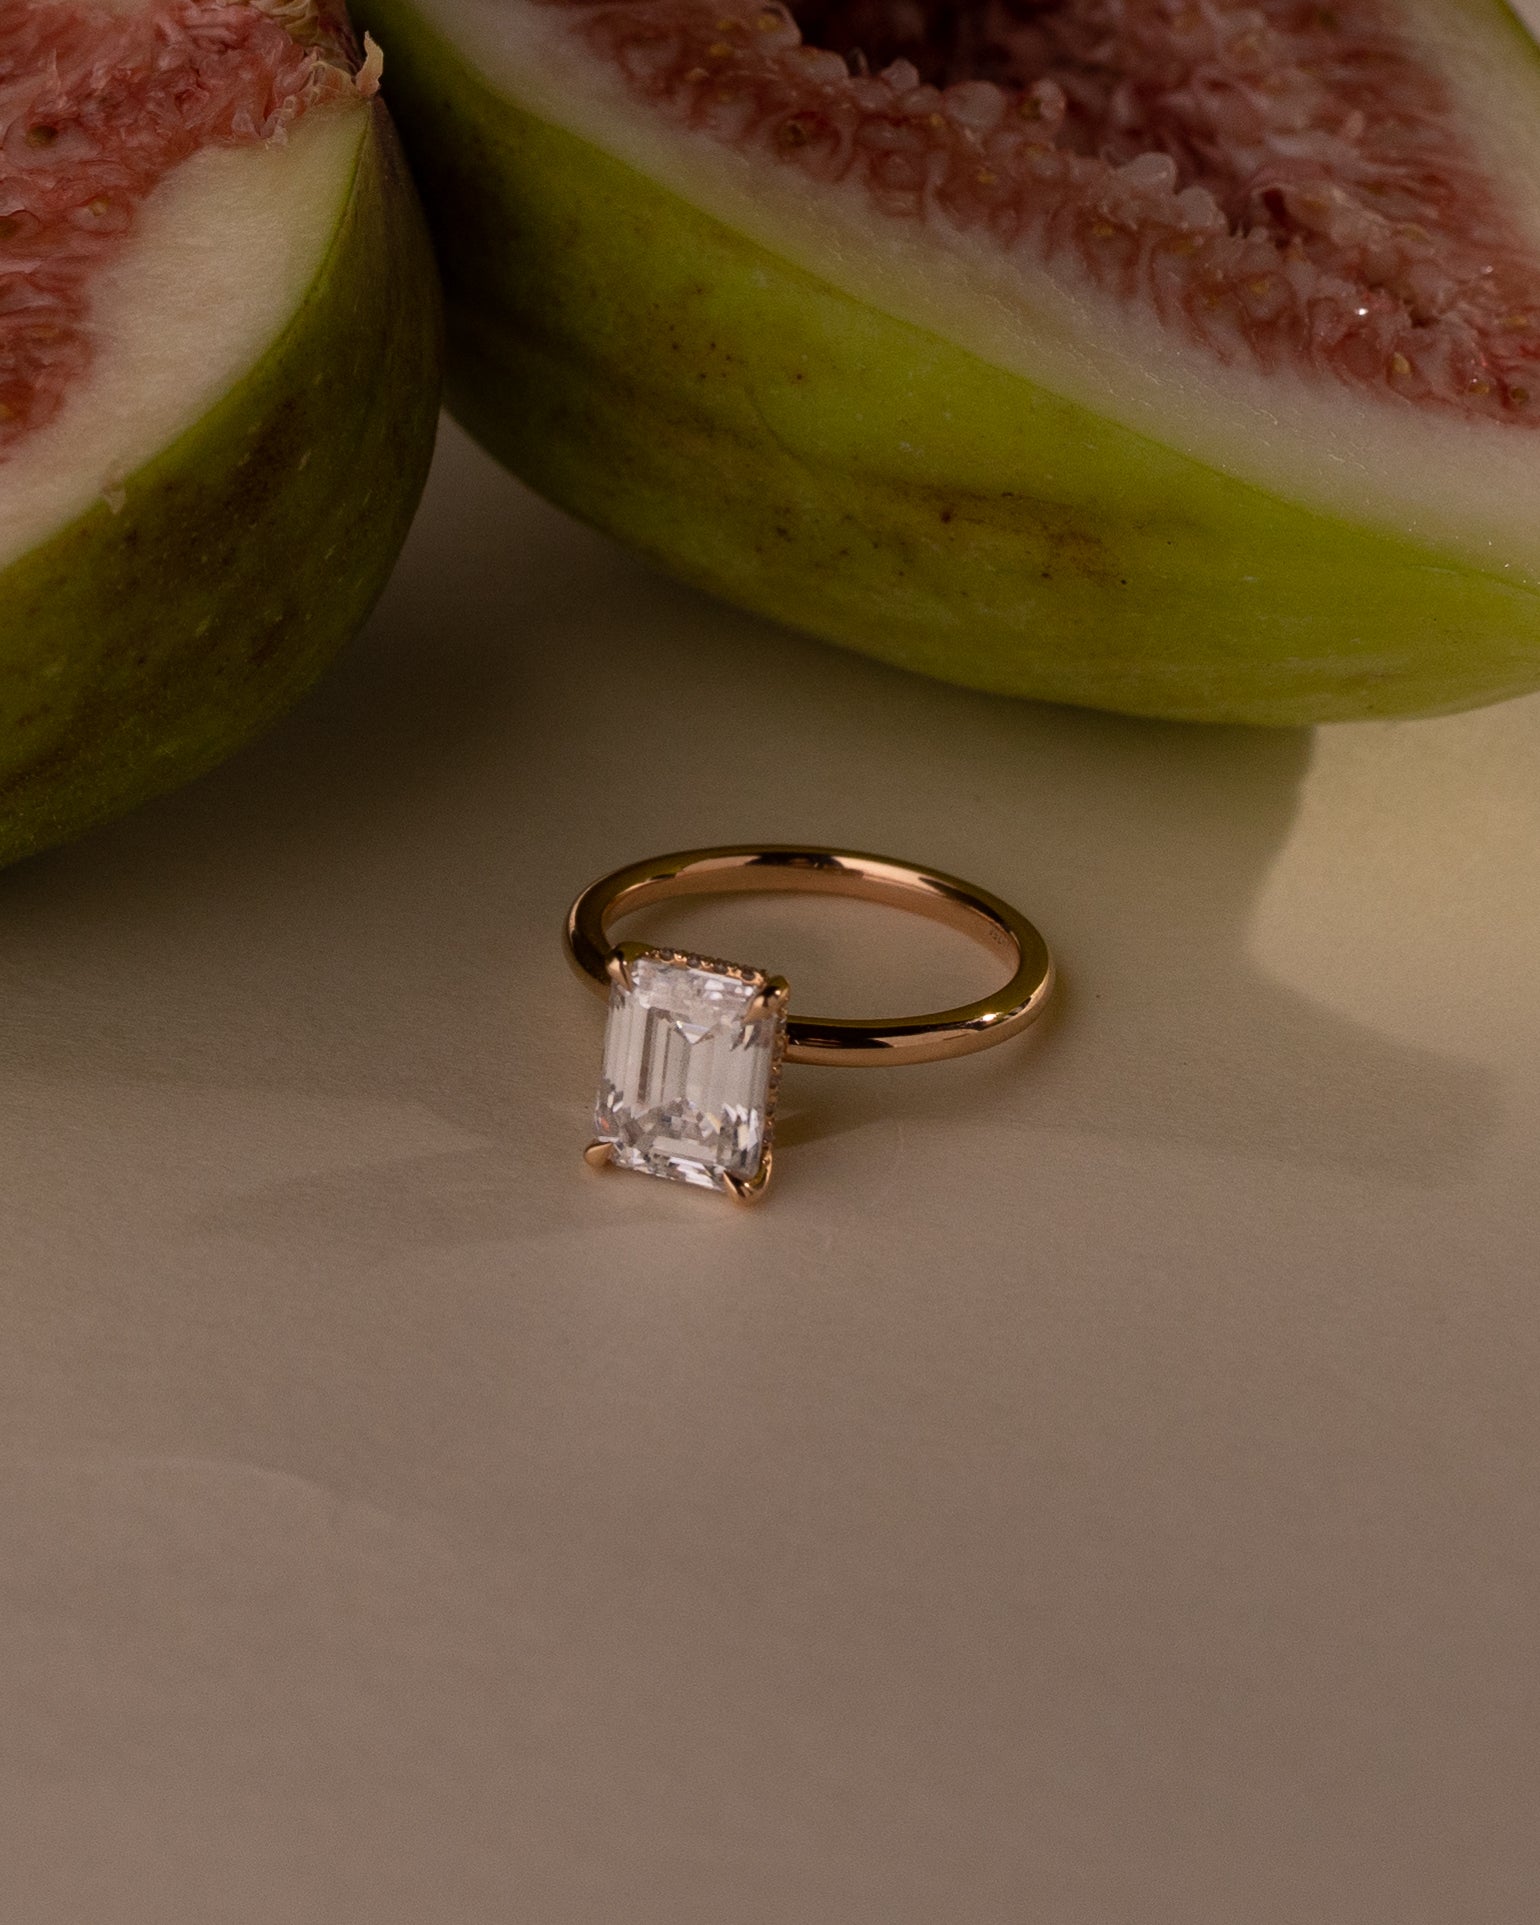 Wedding Diamond Ring 14k Yellow Gold White Gold Simple Engagement Ring Oval Diamond  Ring,simple Wedding Band Rose Gold Ring - Etsy